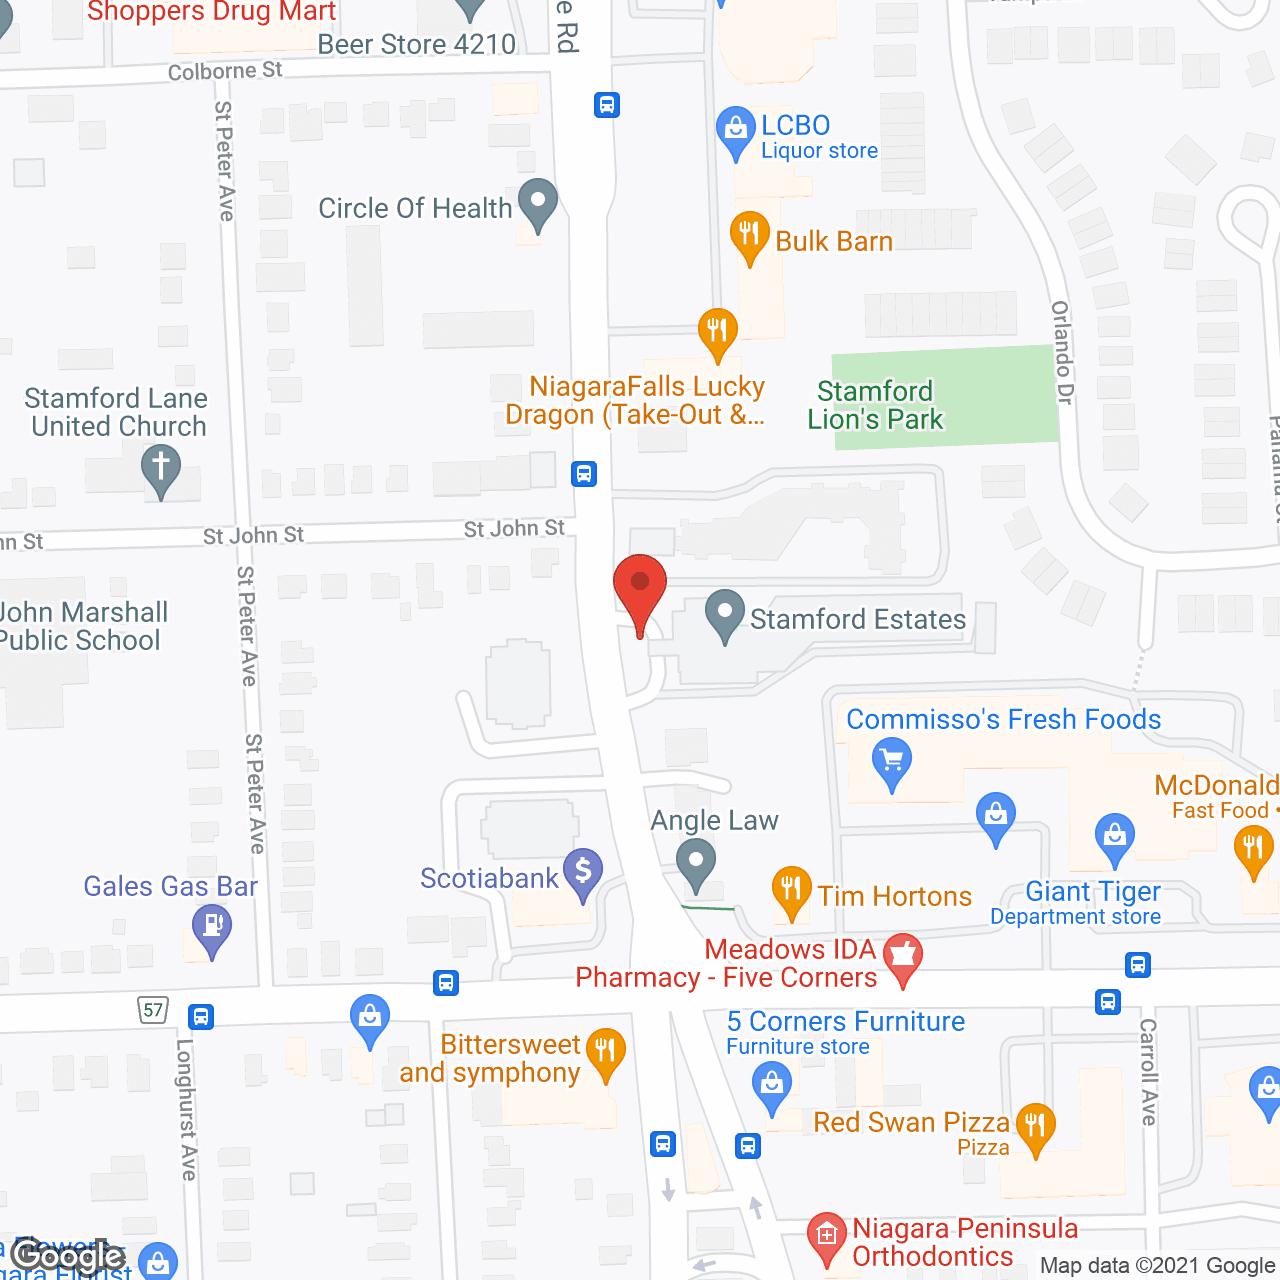 Stamford Estates in google map